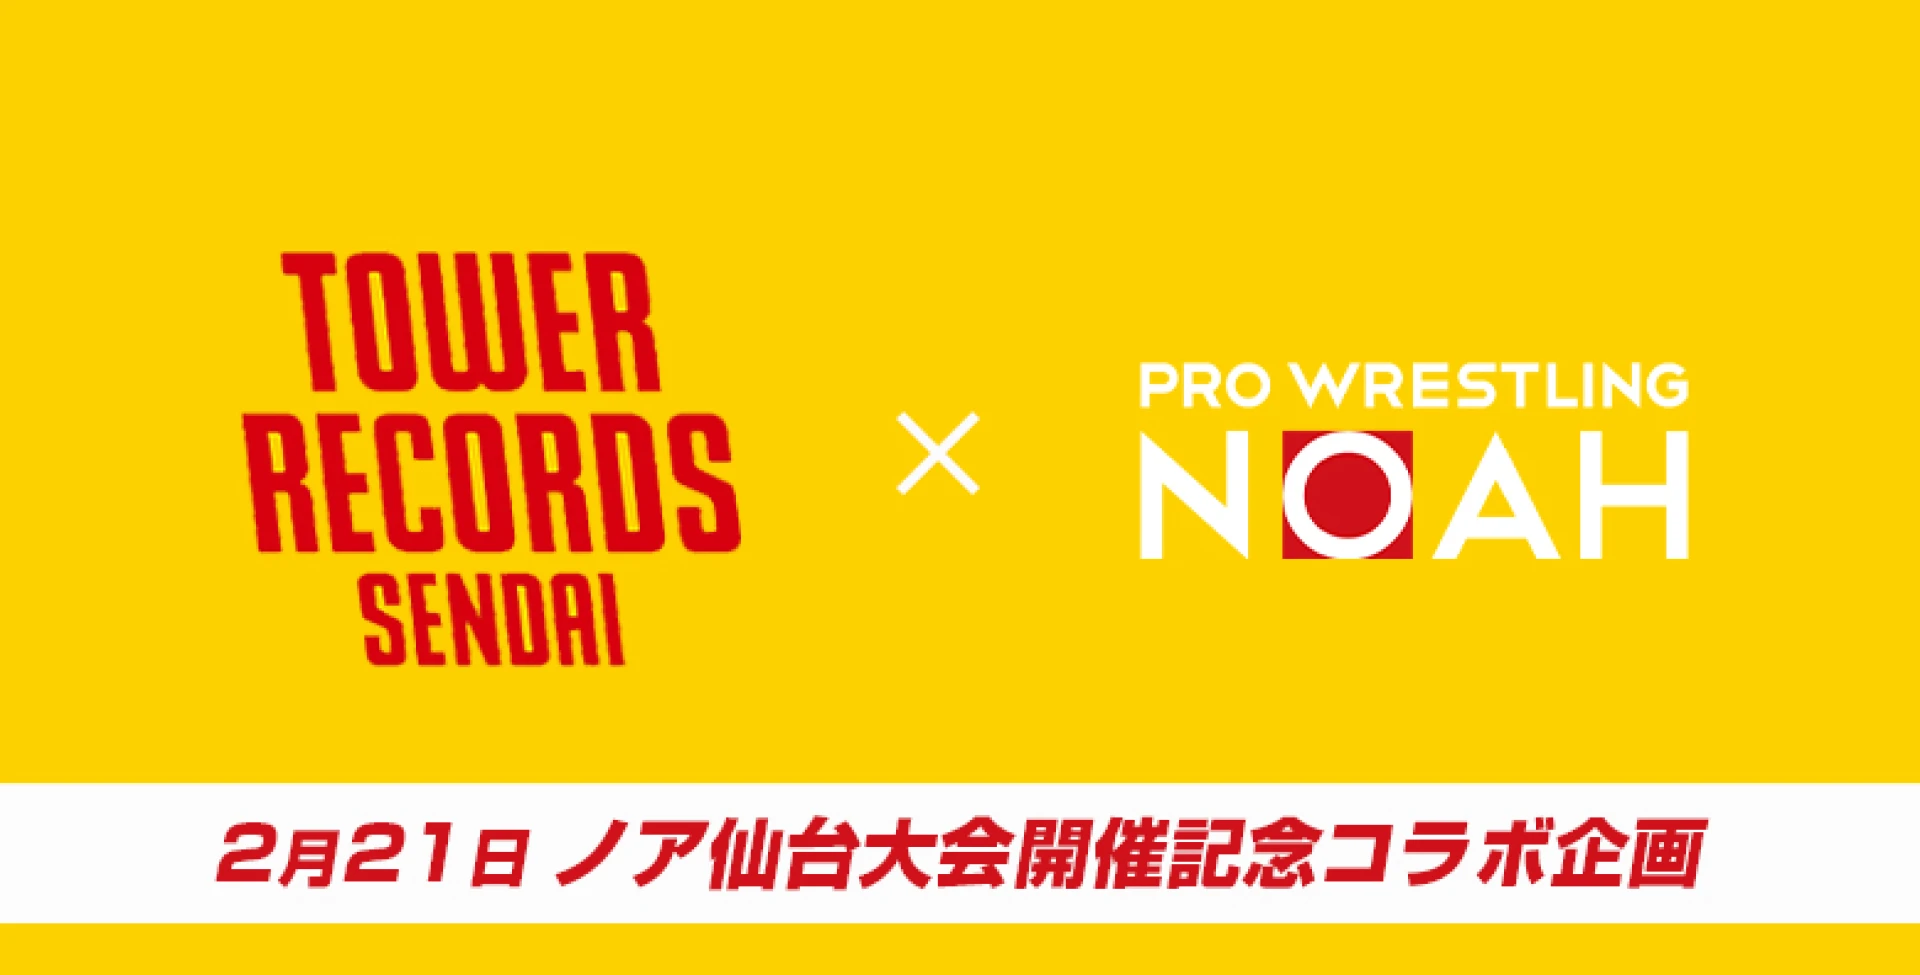 プロレスリング・ノア×TOWER RECORDS 仙台パルコ店コラボ情報！